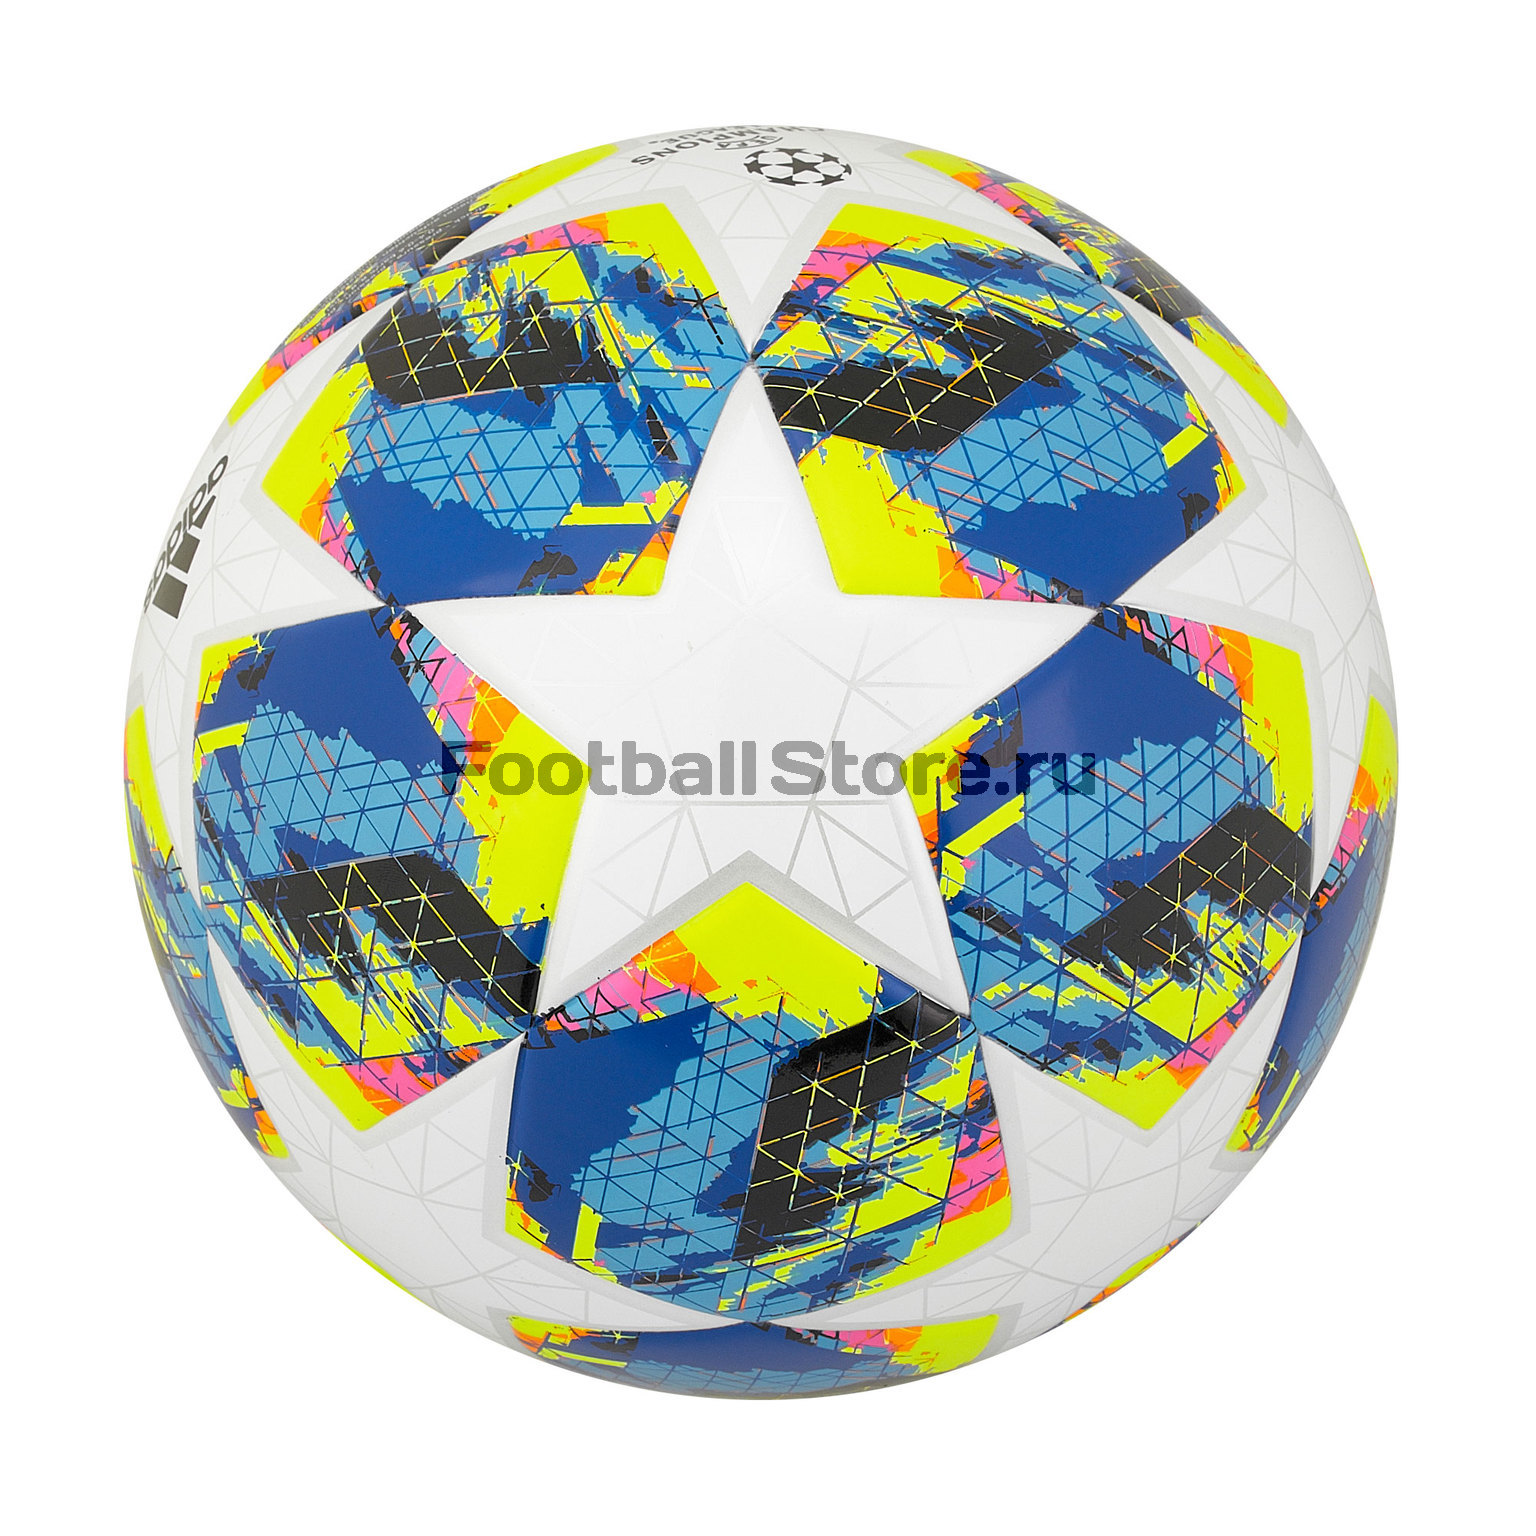 Детский Футбольный мяч Adidas Finale J350 DY2550 – купить в интернет магазине цена, фото